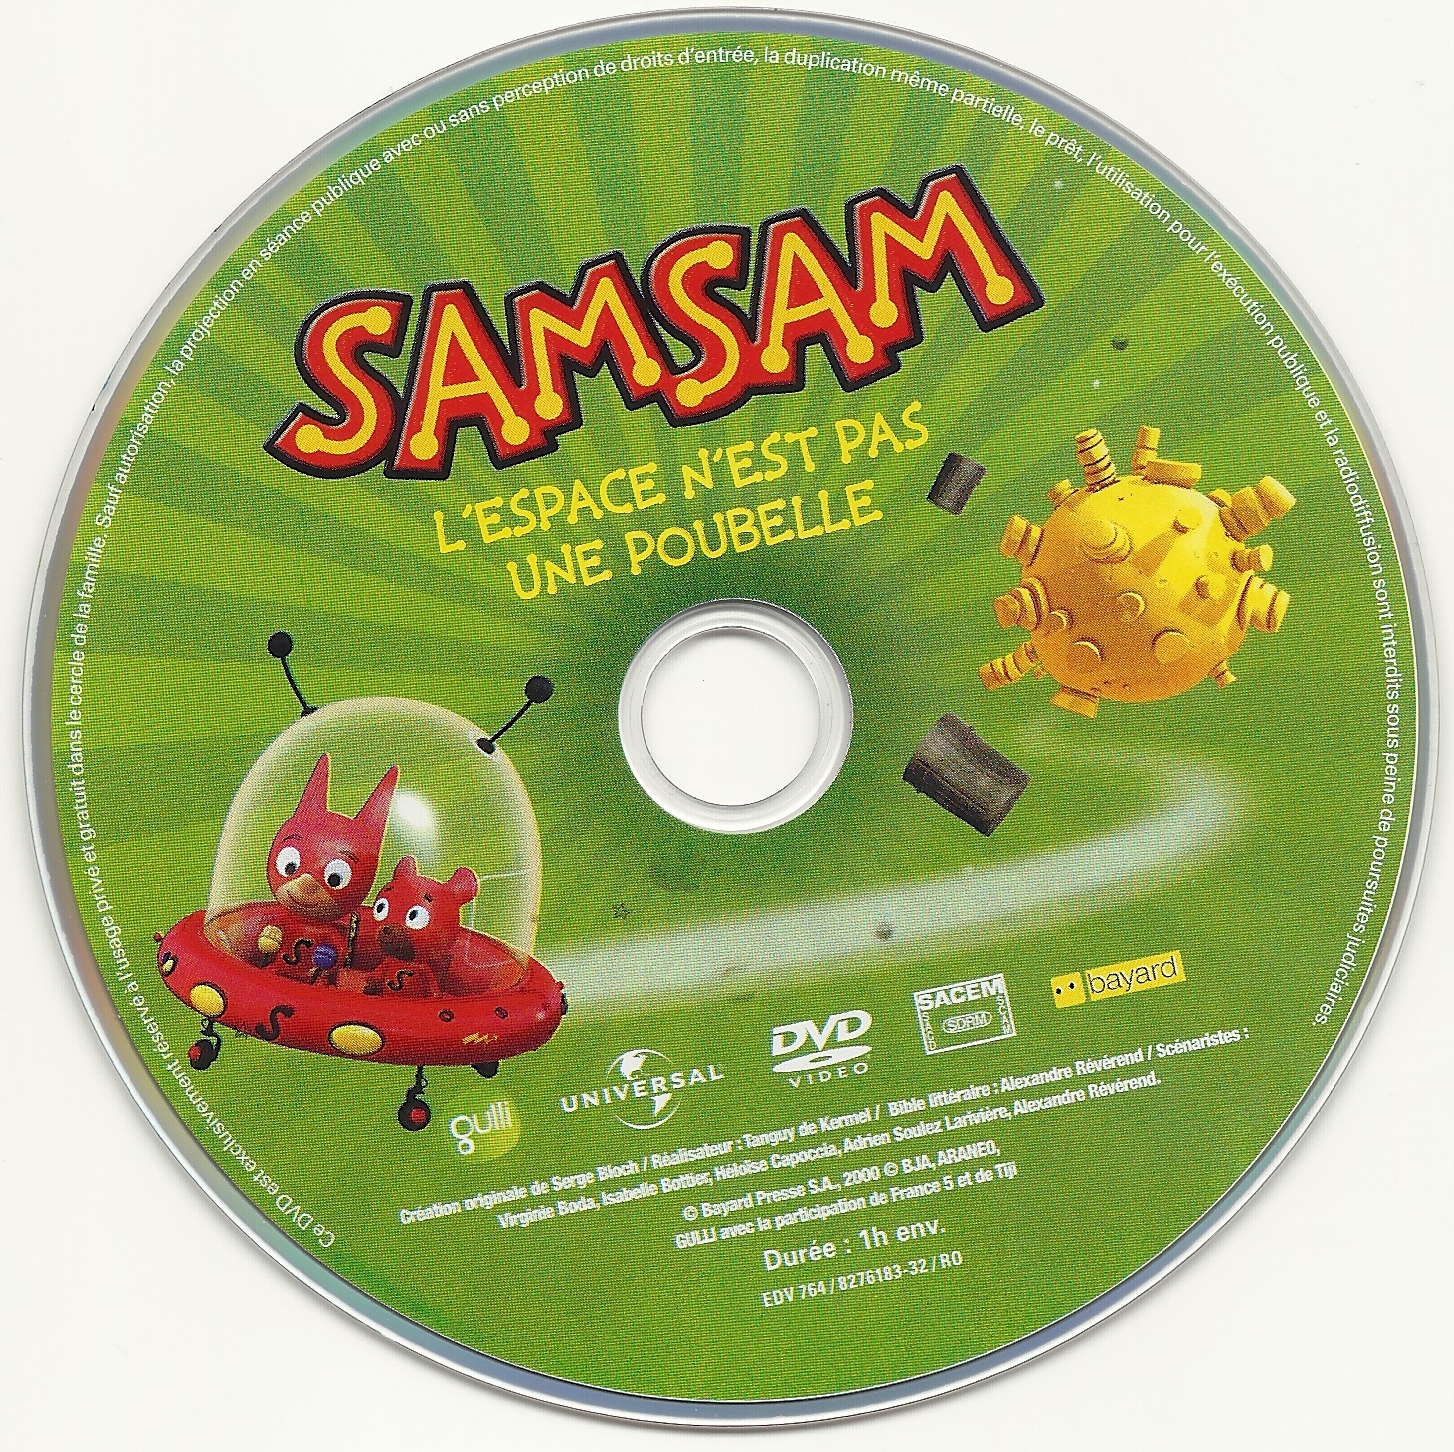 Samsam - L